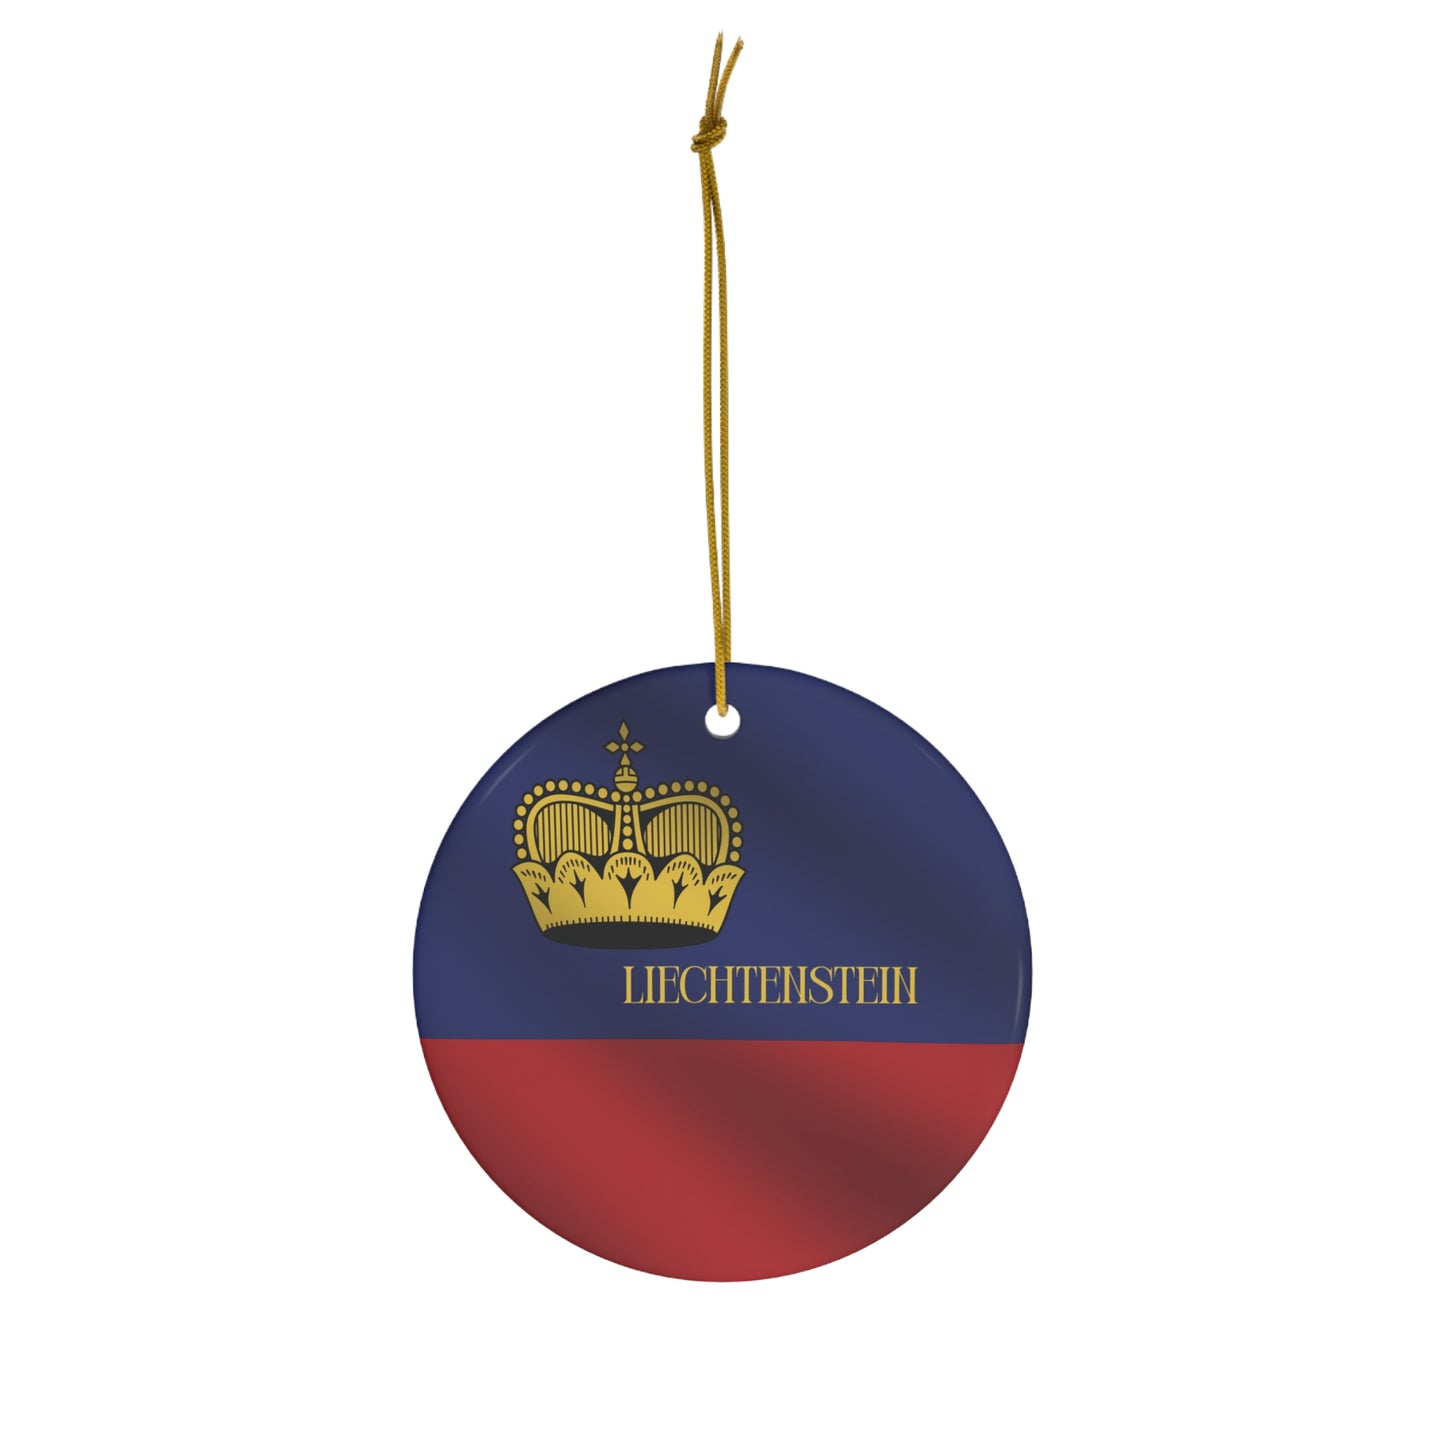 Liechtenstein Christmas Ornament - Liechtenstein Flag on Heart or Circle Shaped Ornament, Ornament for Travel Lovers, Liecthenstein Natives